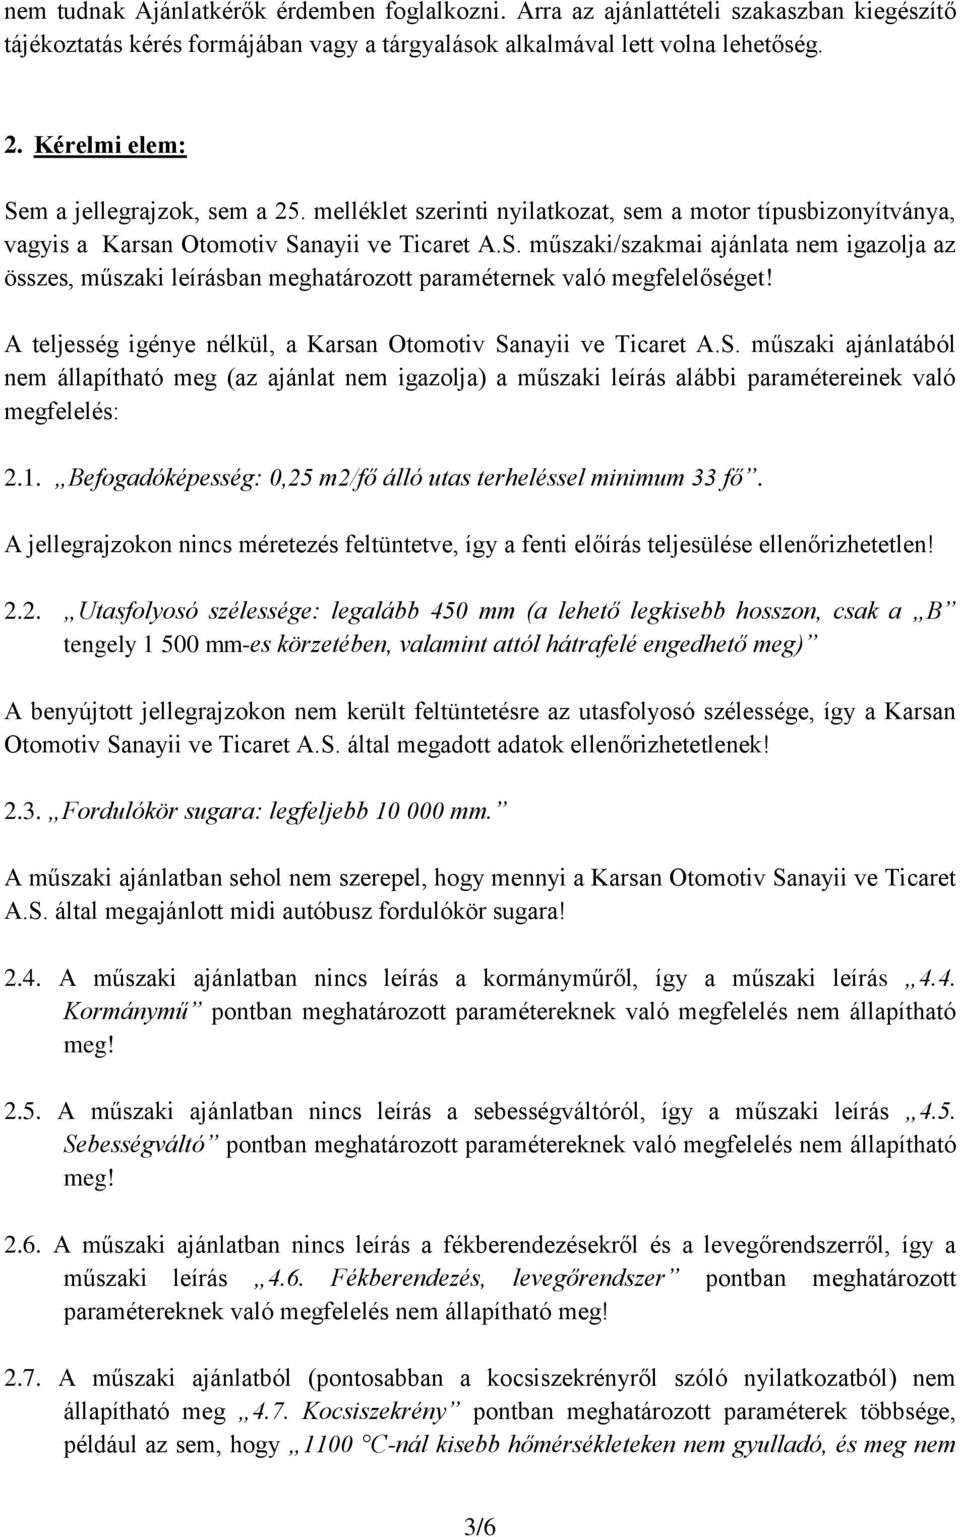 A teljesség igénye nélkül, a Karsan Otomotiv Sanayii ve Ticaret A.S. műszaki ajánlatából nem állapítható meg (az ajánlat nem igazolja) a műszaki leírás alábbi paramétereinek való megfelelés: 2.1.